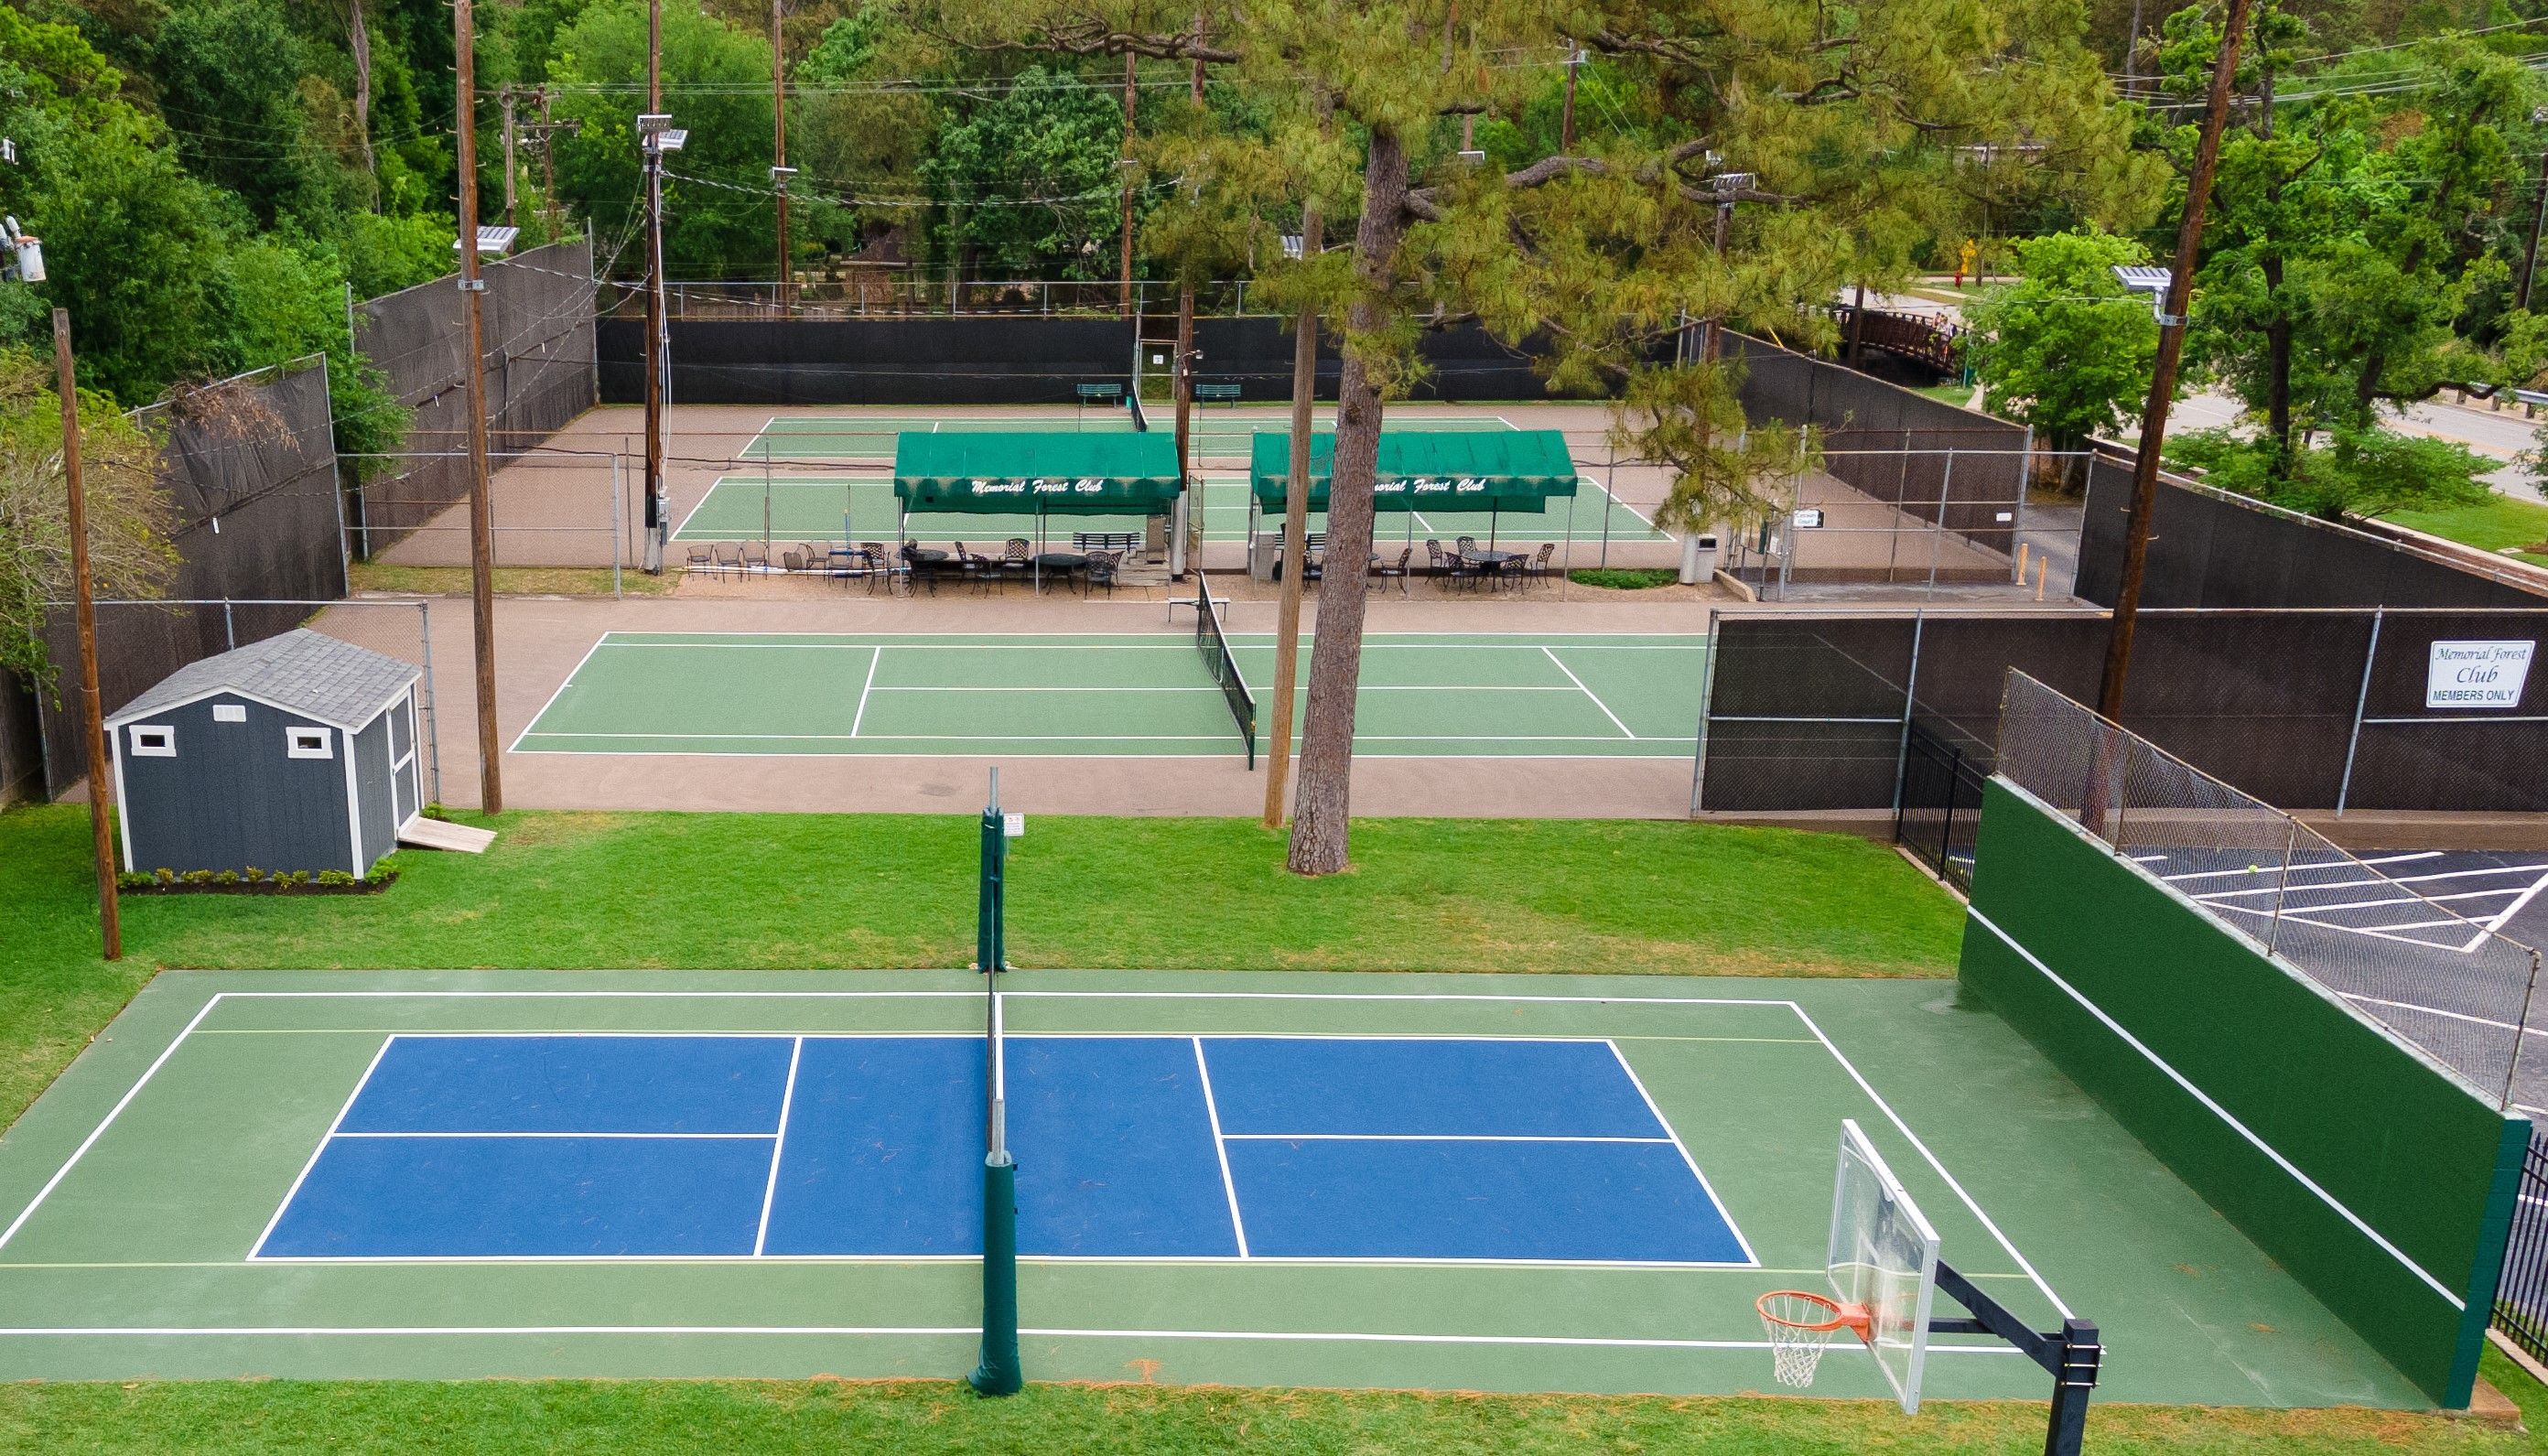 DJI_tennis court.jpg